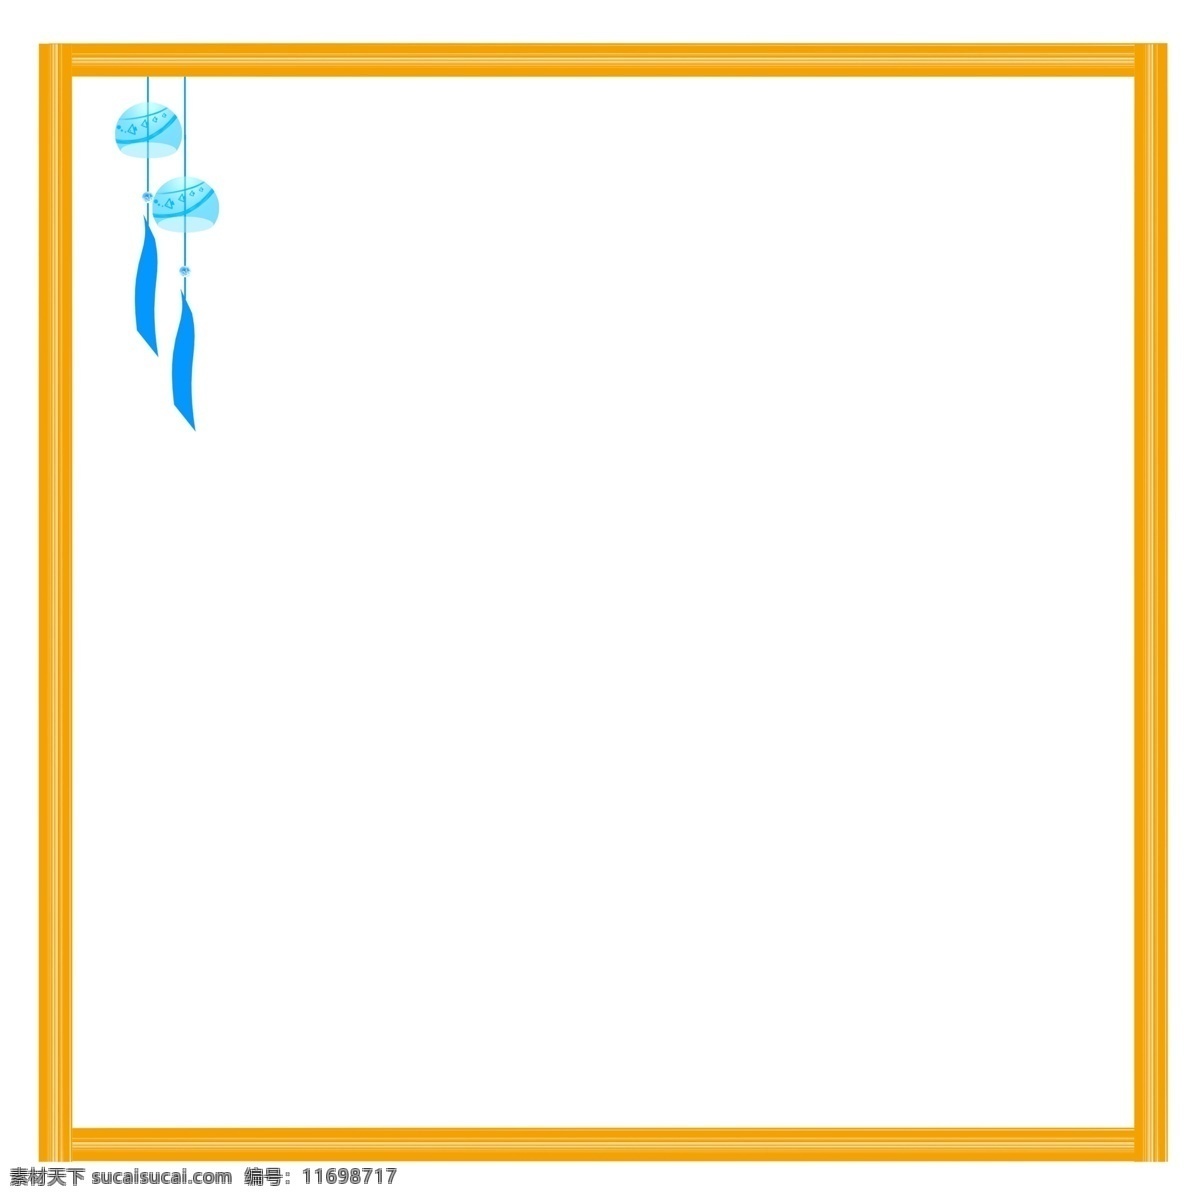 手绘 风铃 边框 插画 黄色的边框 蓝色的风铃 漂亮的风铃 卡通插画 手绘边框插画 创意的边框